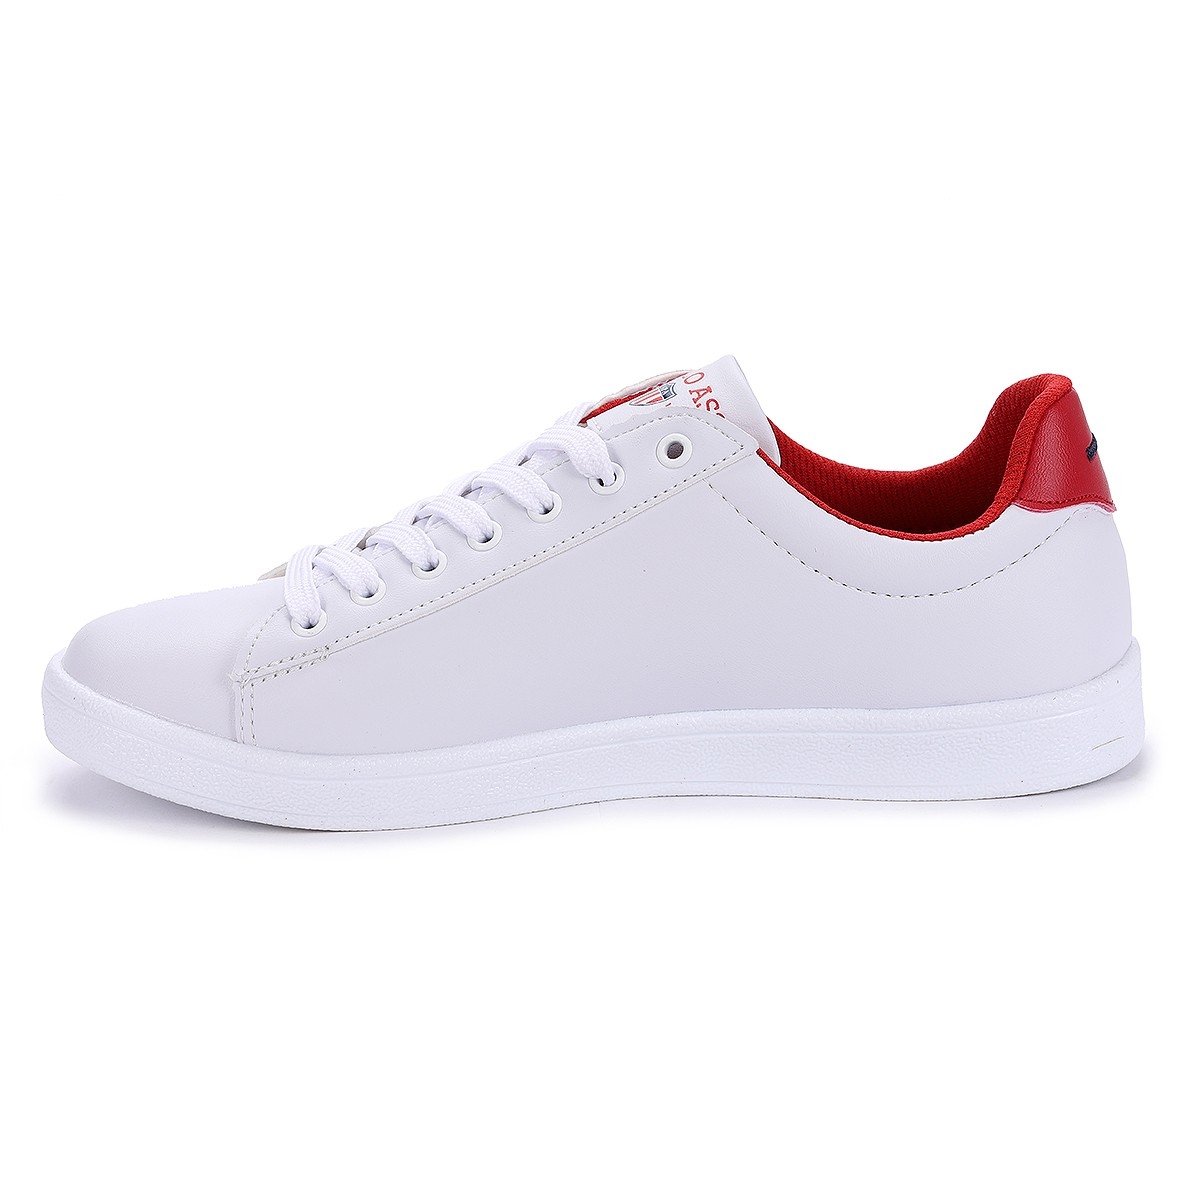 Flo Assn. Franco Wmn Günlük Yürüyüş Bayan Spor Ayakkabı Beyaz Kırmızı. 1